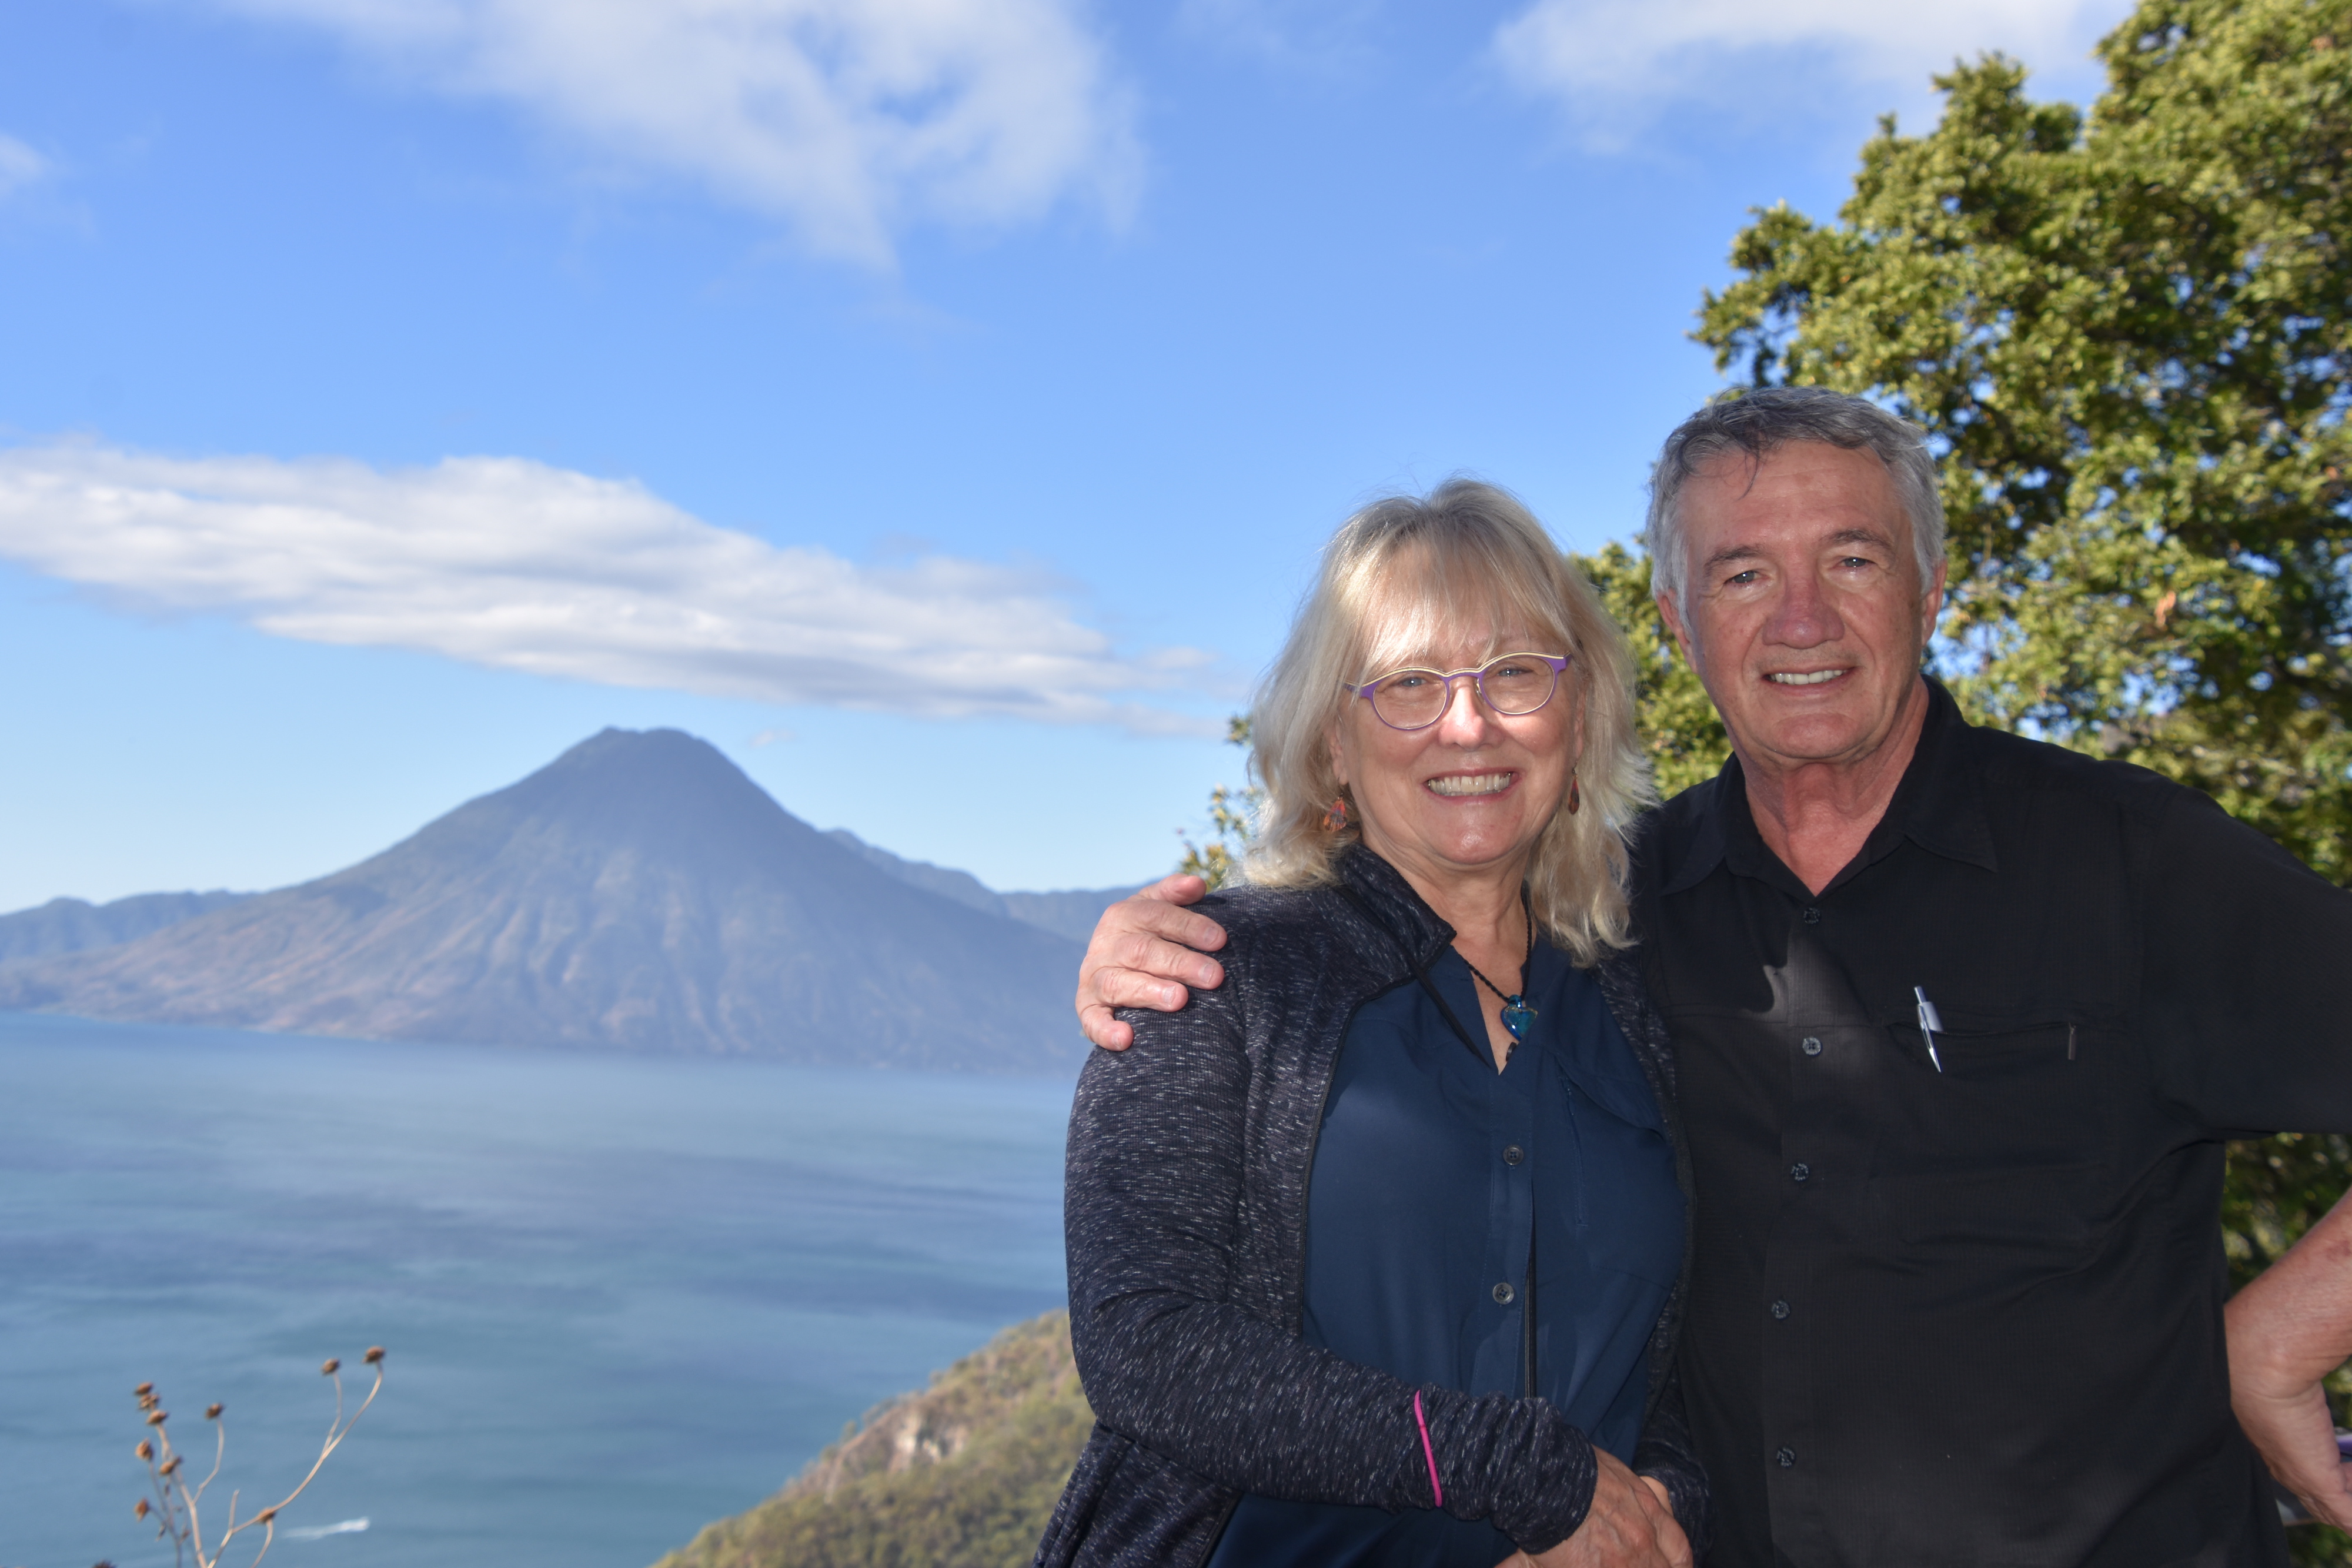 At Lake Atitlan